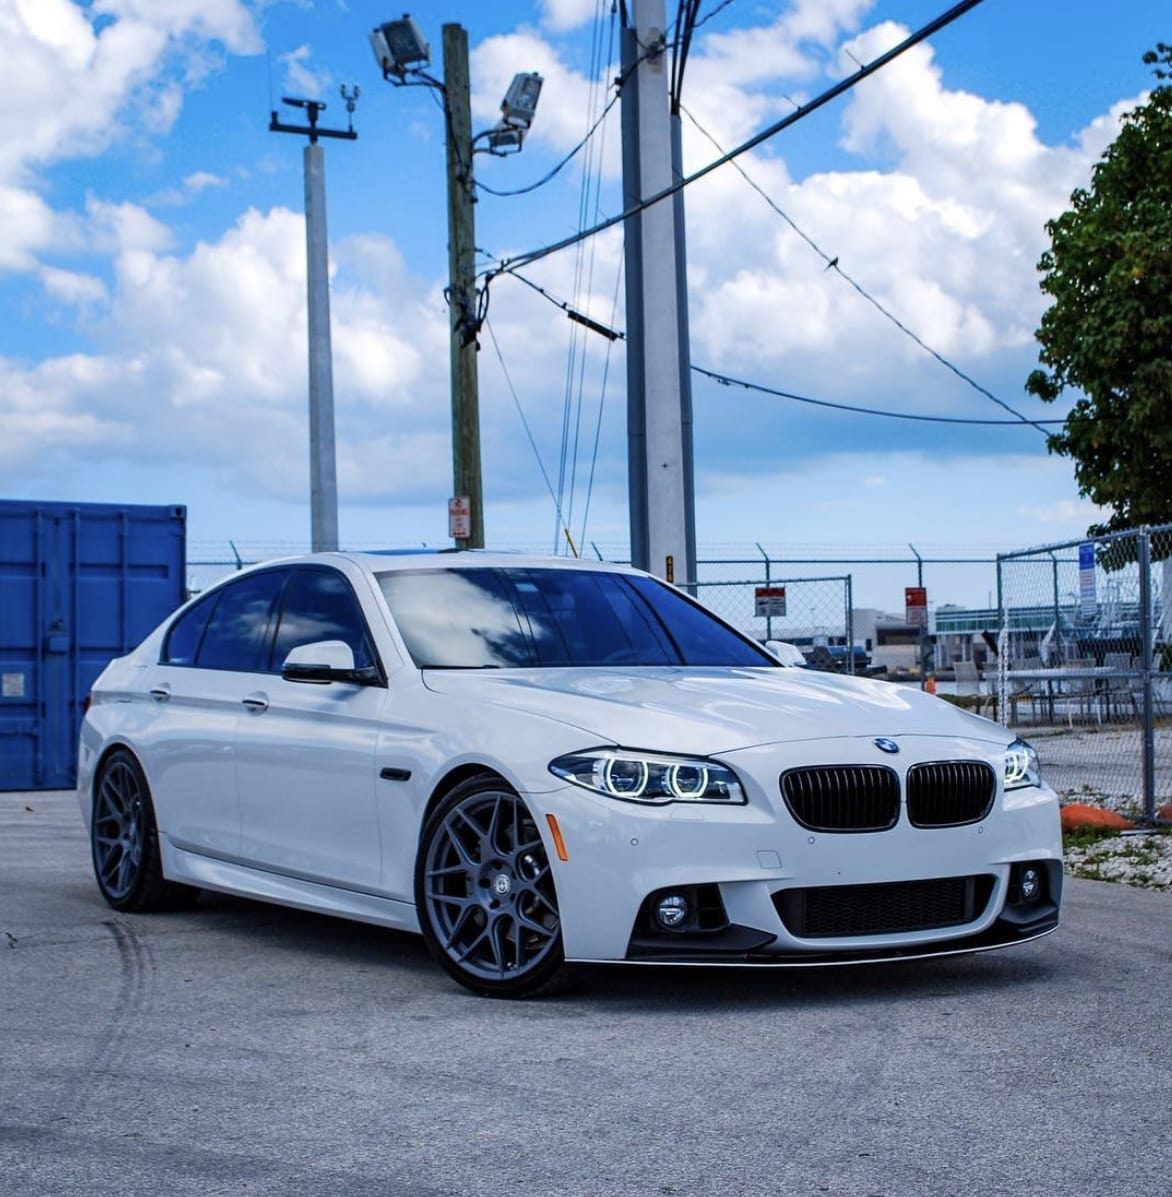 BMW F10 West Coast – Series 5 Euros